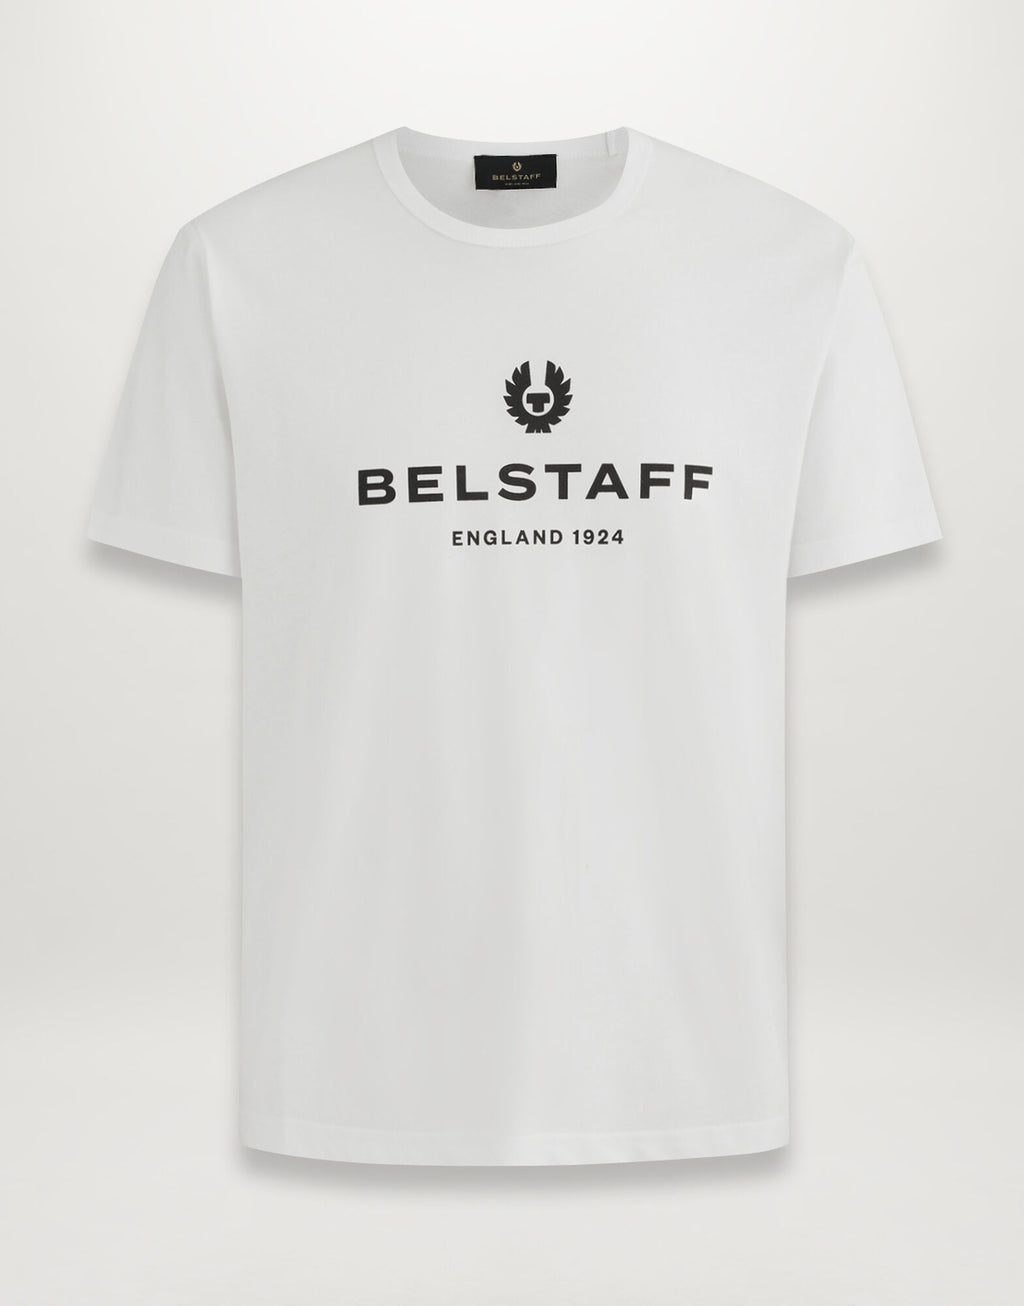 Belstaff 1924 T-Shirt - White